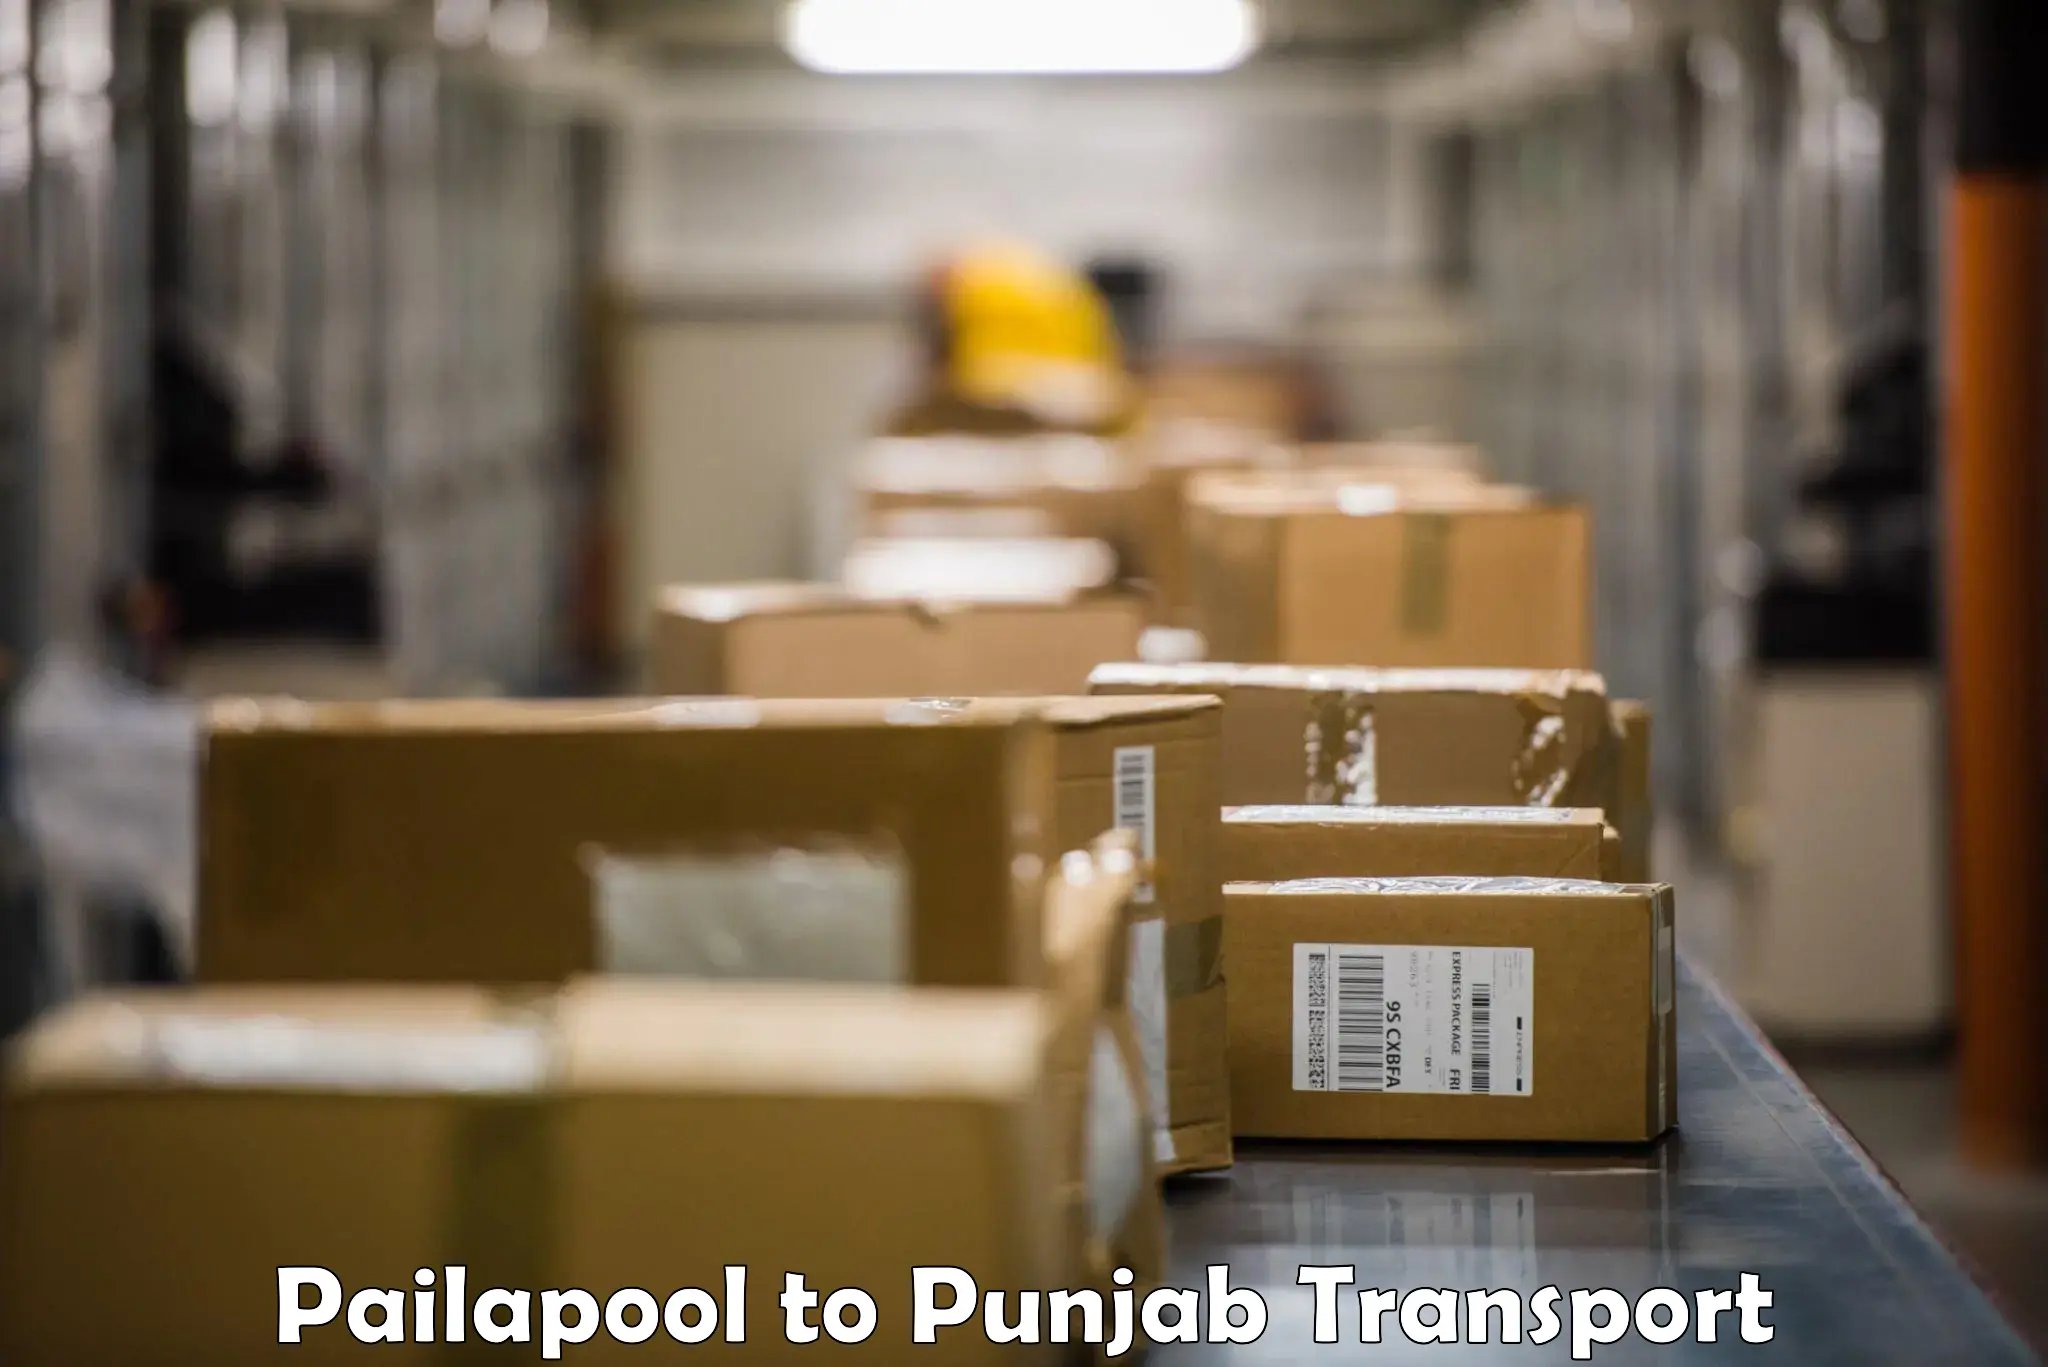 Lorry transport service Pailapool to Hoshiarpur